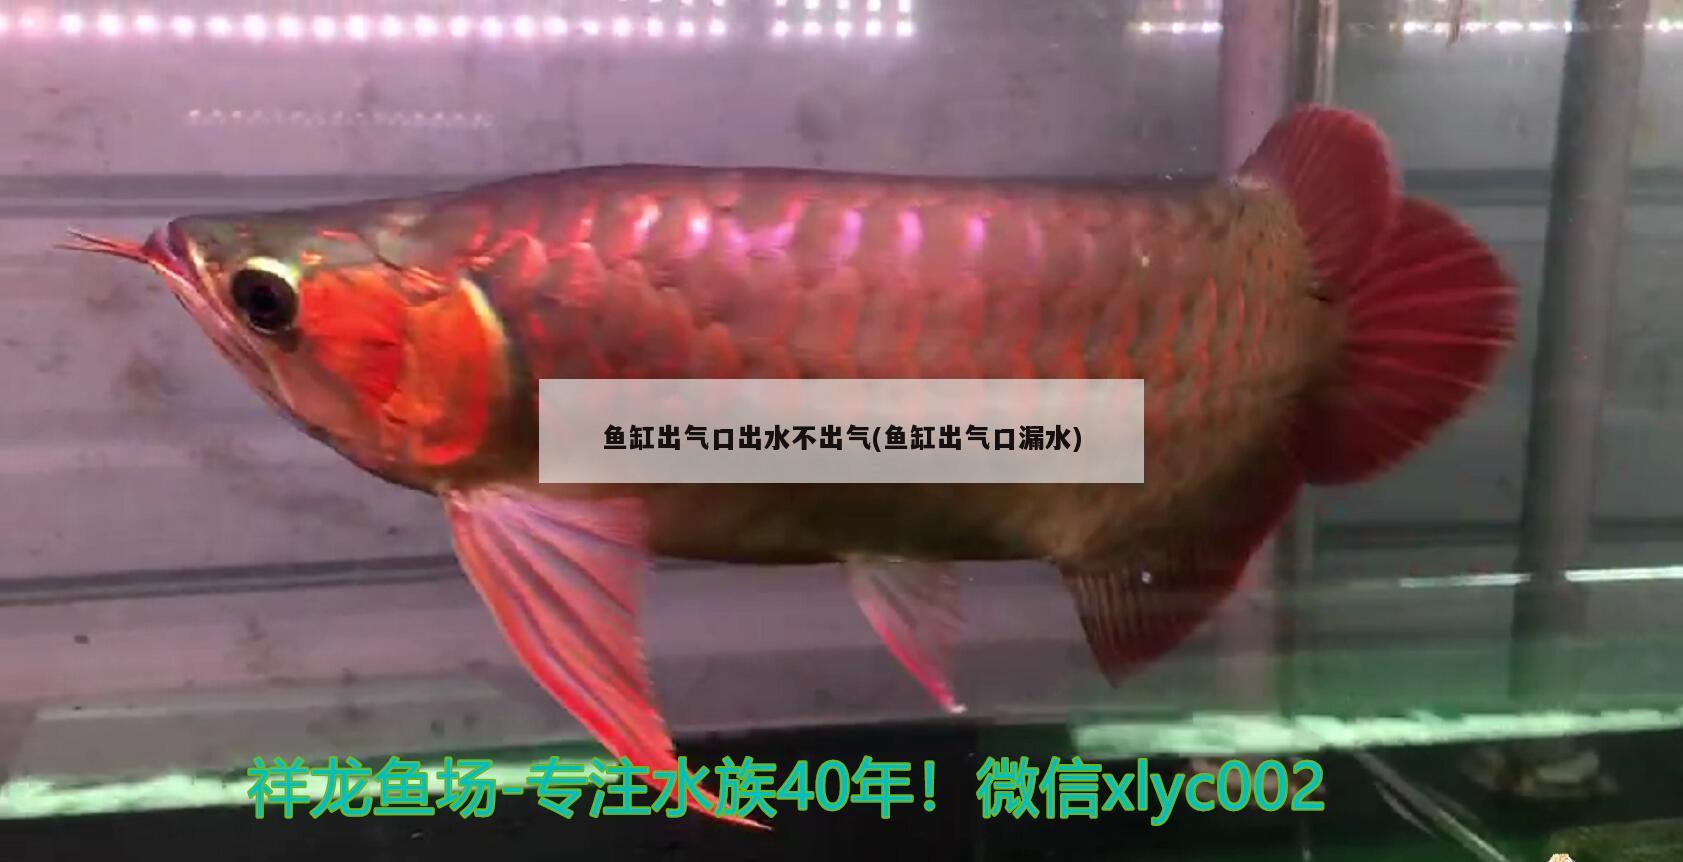 鱼缸出气口出水不出气(鱼缸出气口漏水) 稀有红龙品种